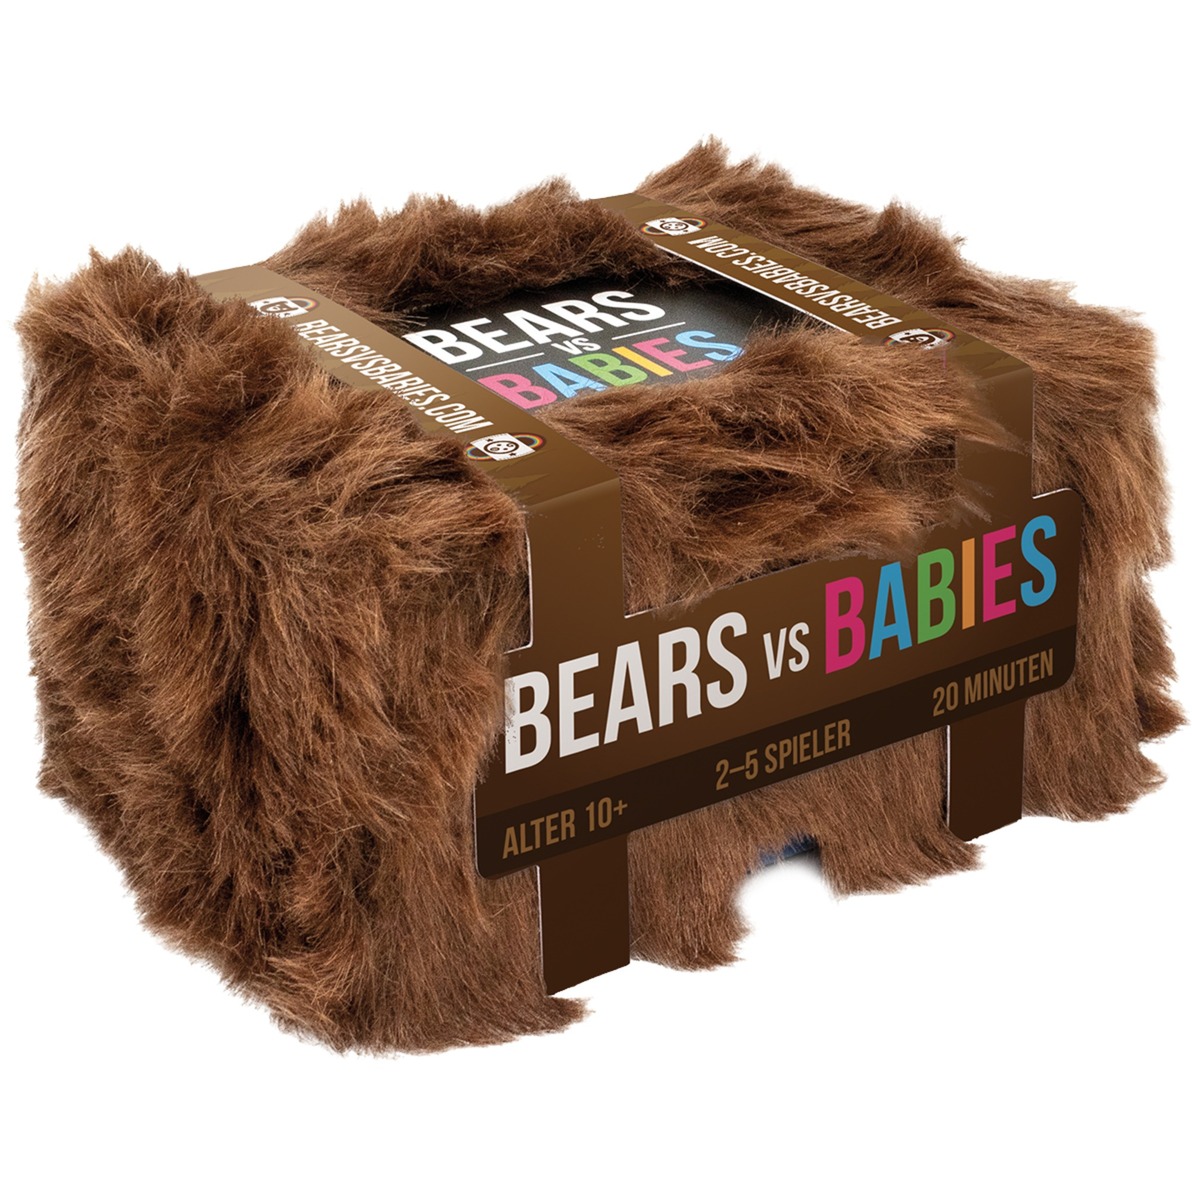 Image of Alternate - Bears vs. Babies, Kartenspiel online einkaufen bei Alternate